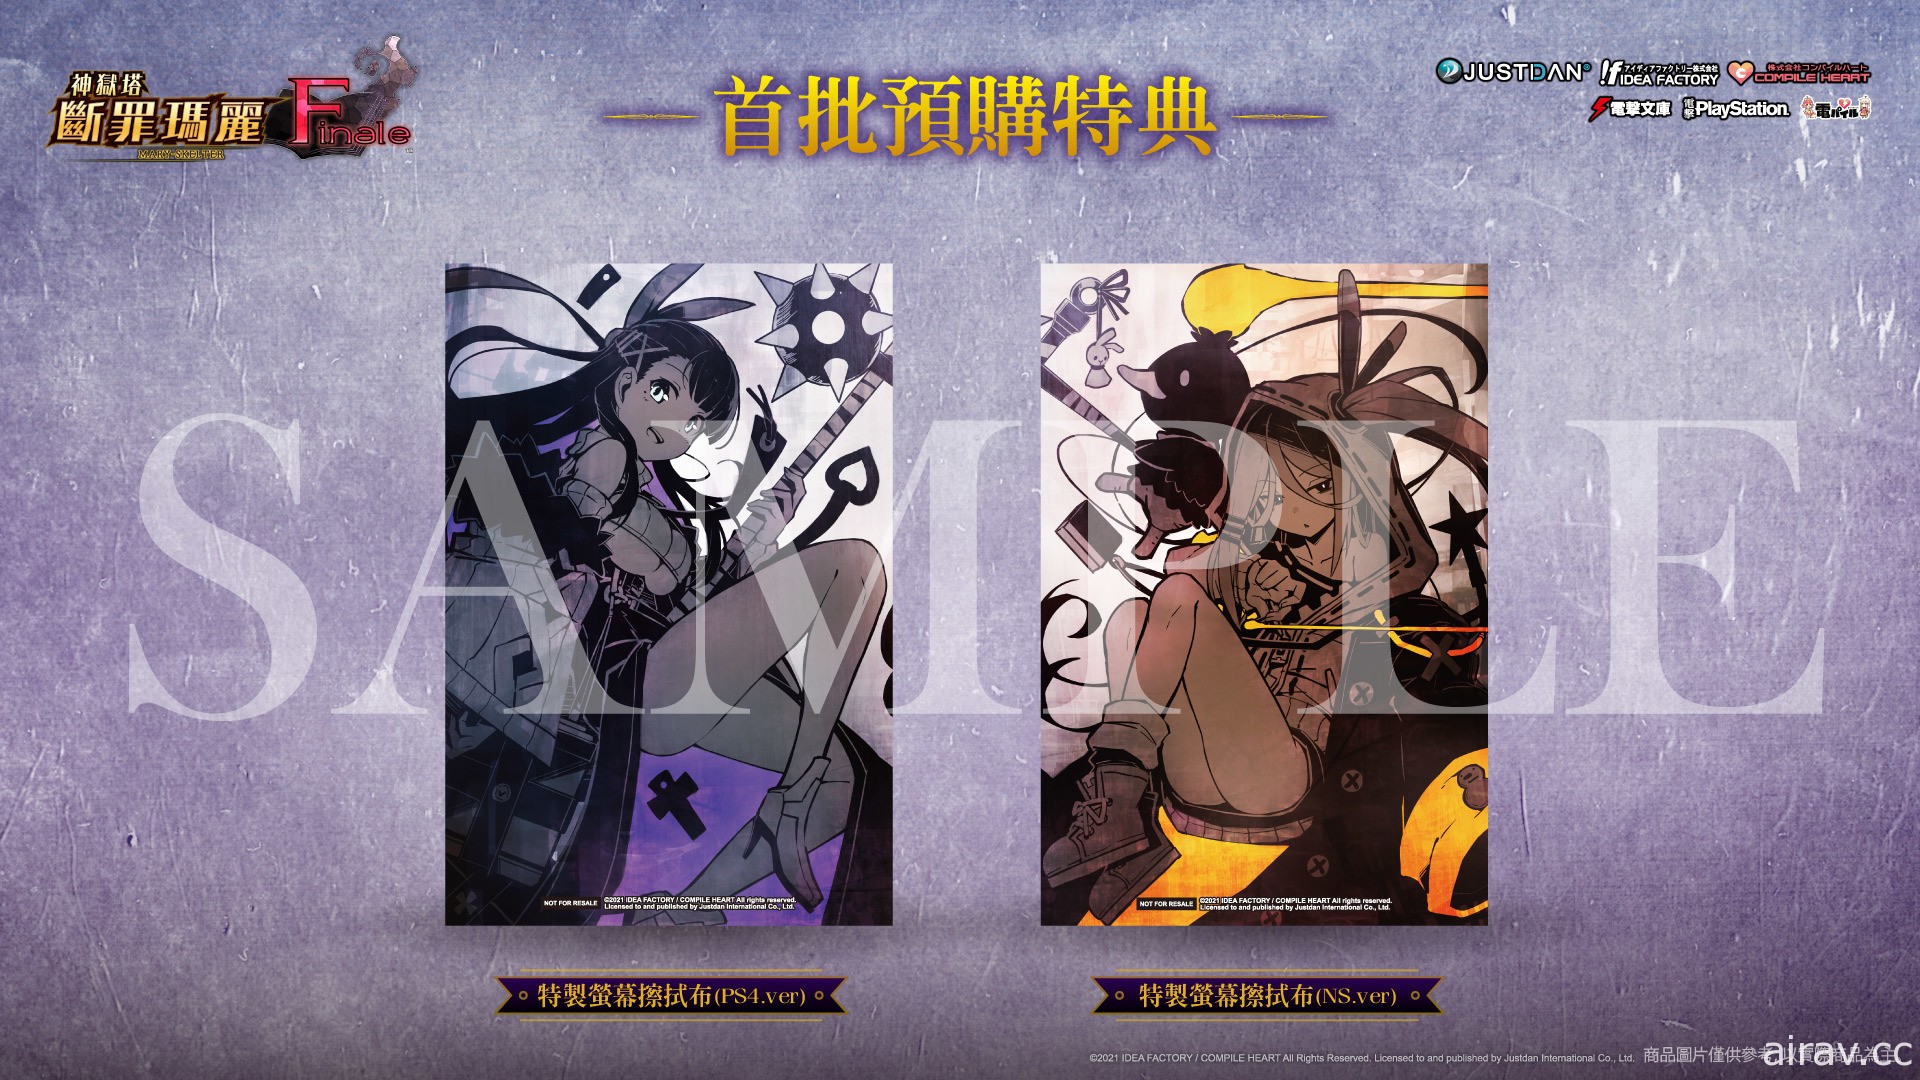 《神獄塔 斷罪瑪麗 Finale》中文版 7 月 22 日發售 預約特典及限定版資訊揭曉